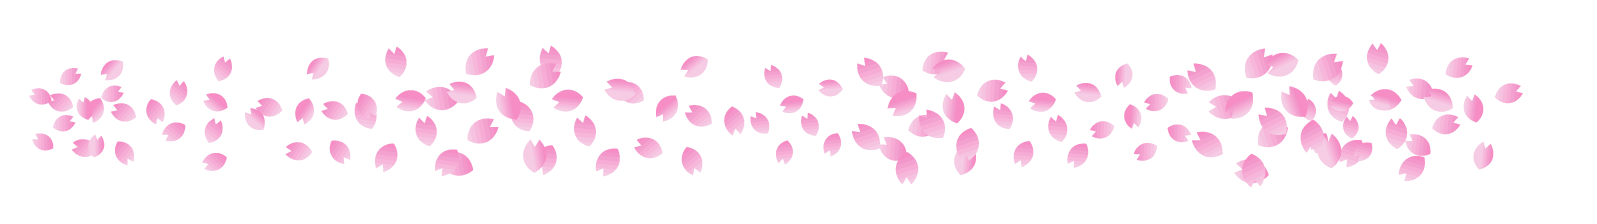 桜の花ライン・罫線イラスト/桜吹雪